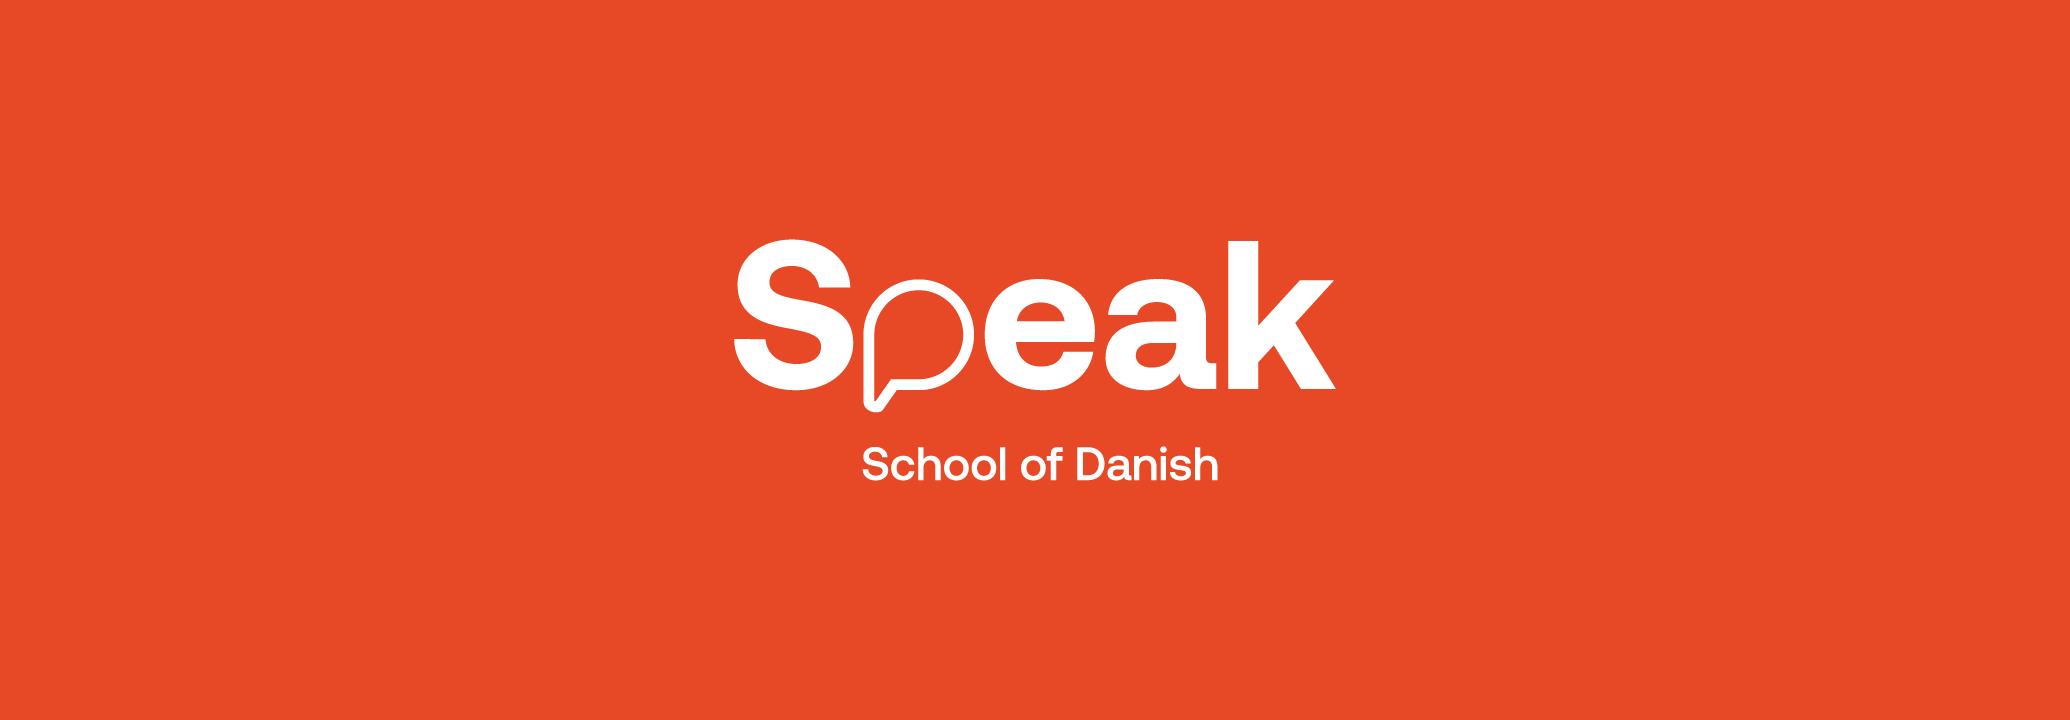 Speak School of Danish